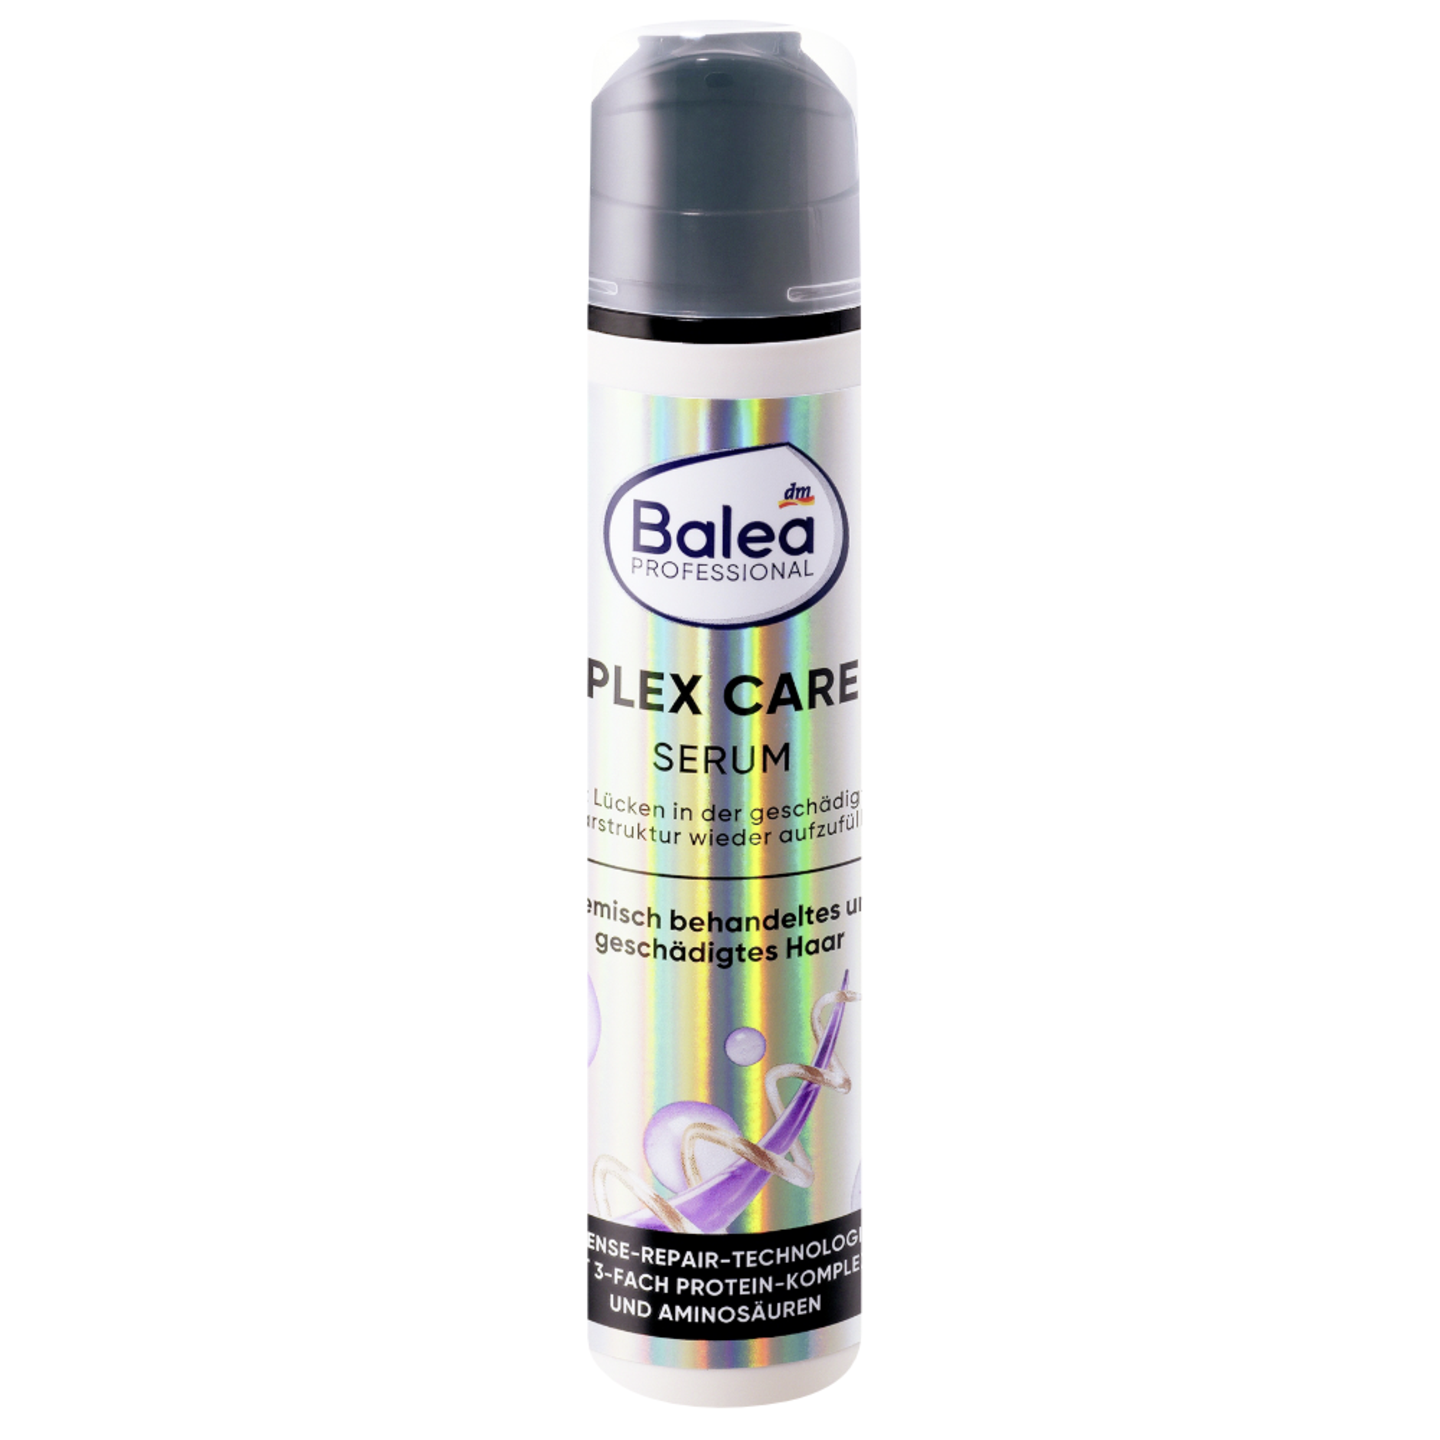 Füllt die Haarstruktur auf: "Plex Care Serum“ von Balea Professional für 3 Euro.